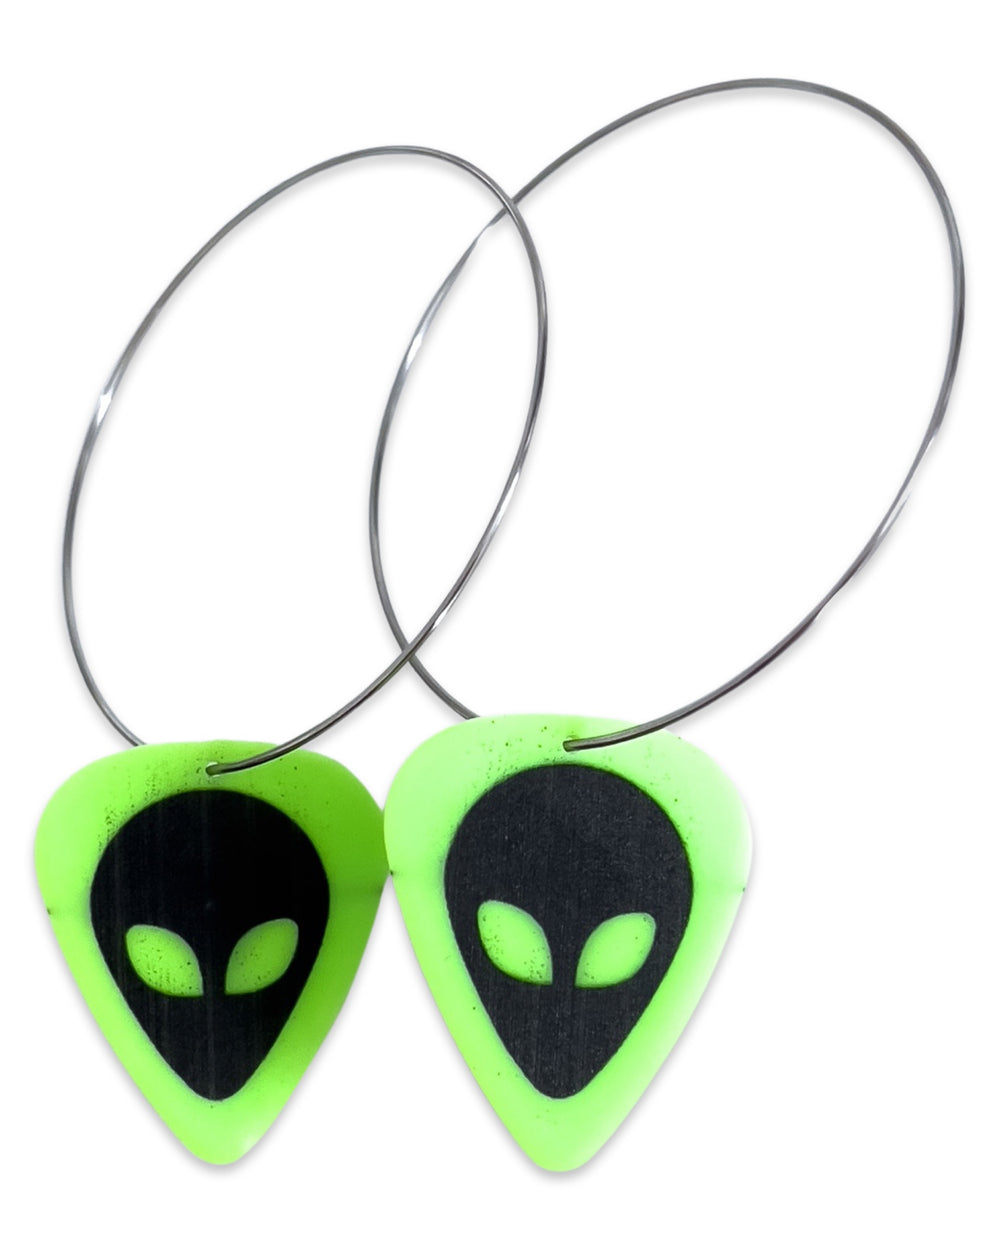 WS Groupie Love Alien Neon Green Reversible Single Guitar Pick Earrings